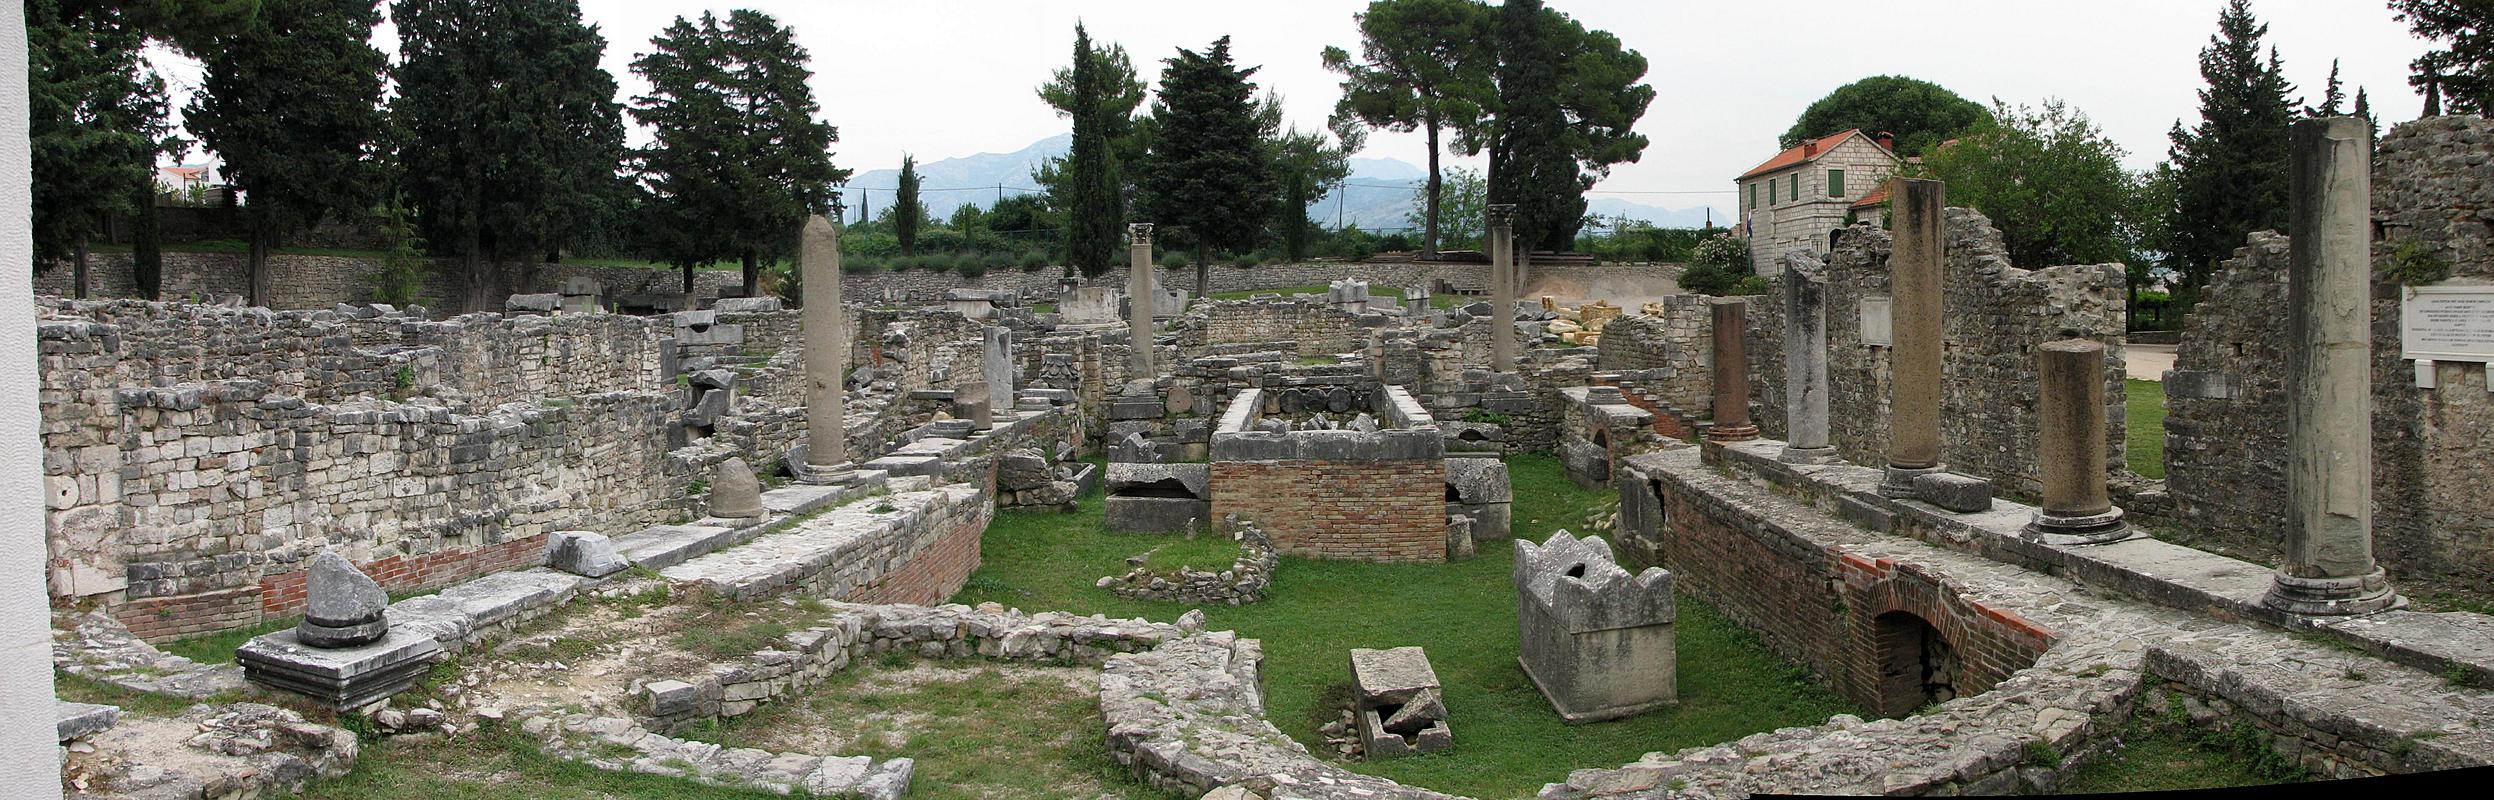 Remains of Kapjinc Basilica